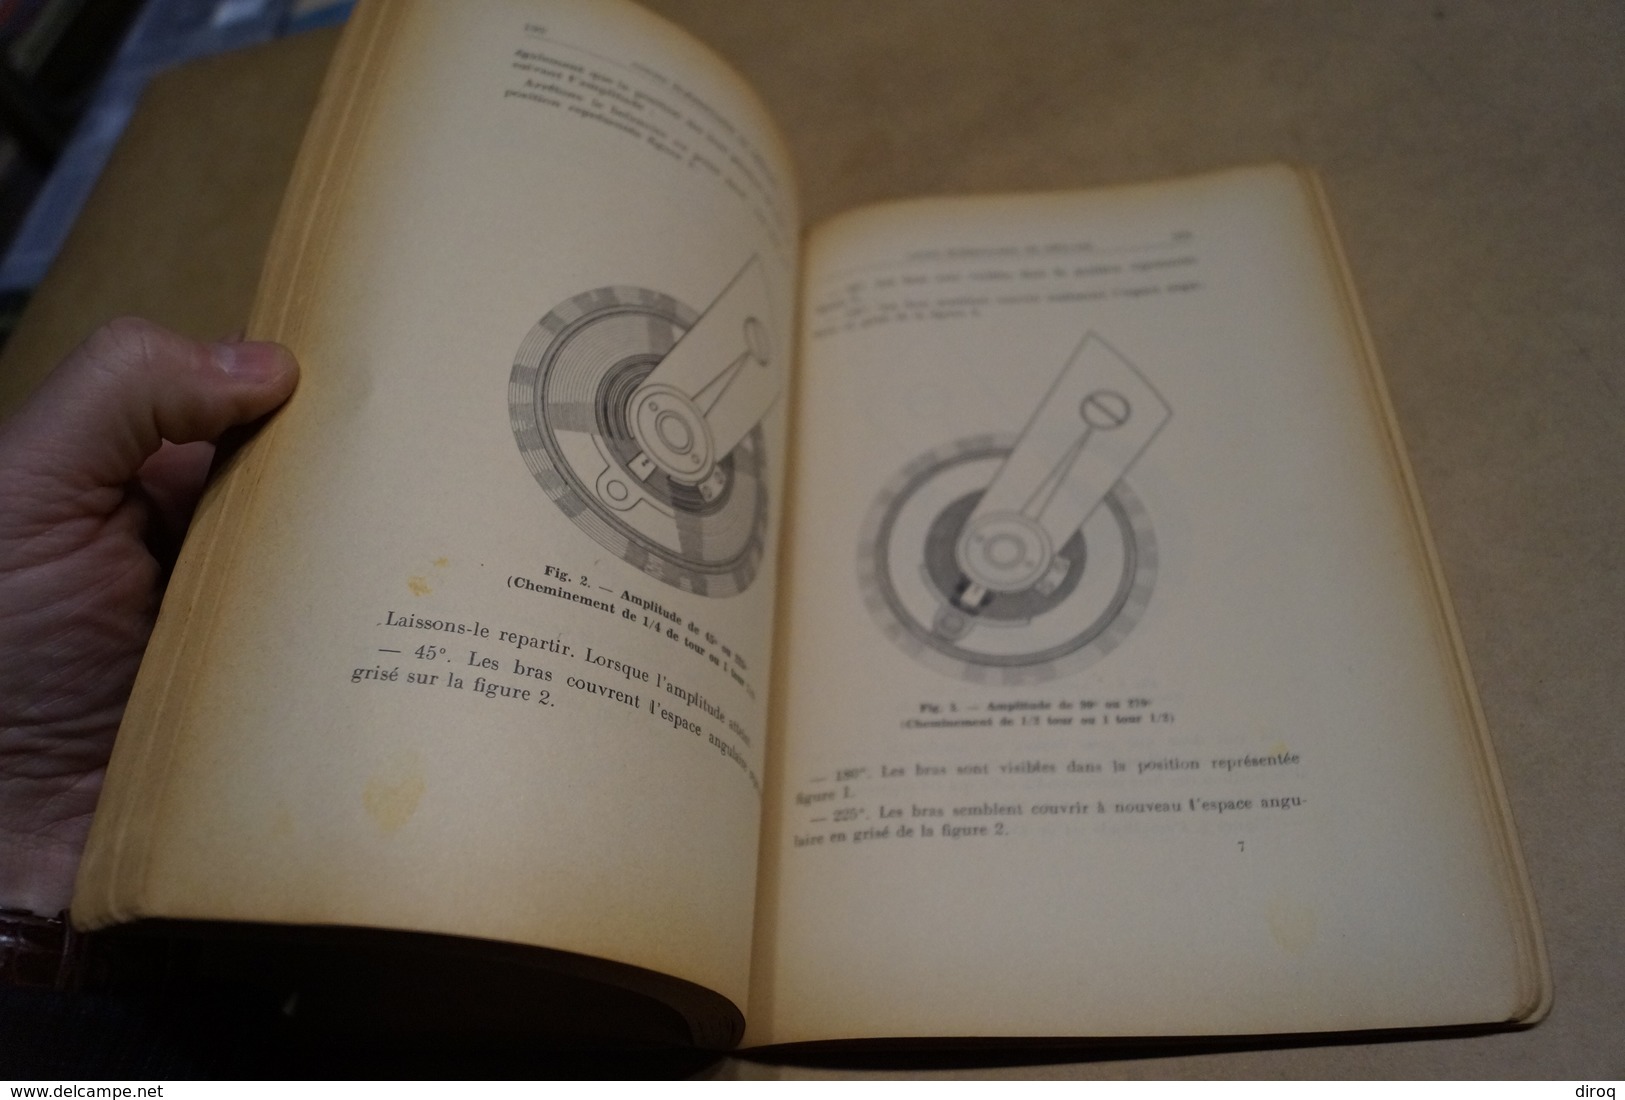 RARE ancien ouvrage d'Horlogerie,1940,A.Dessay,cours de réglage,262 pages,24 cm. sur 16 Cm.Complet